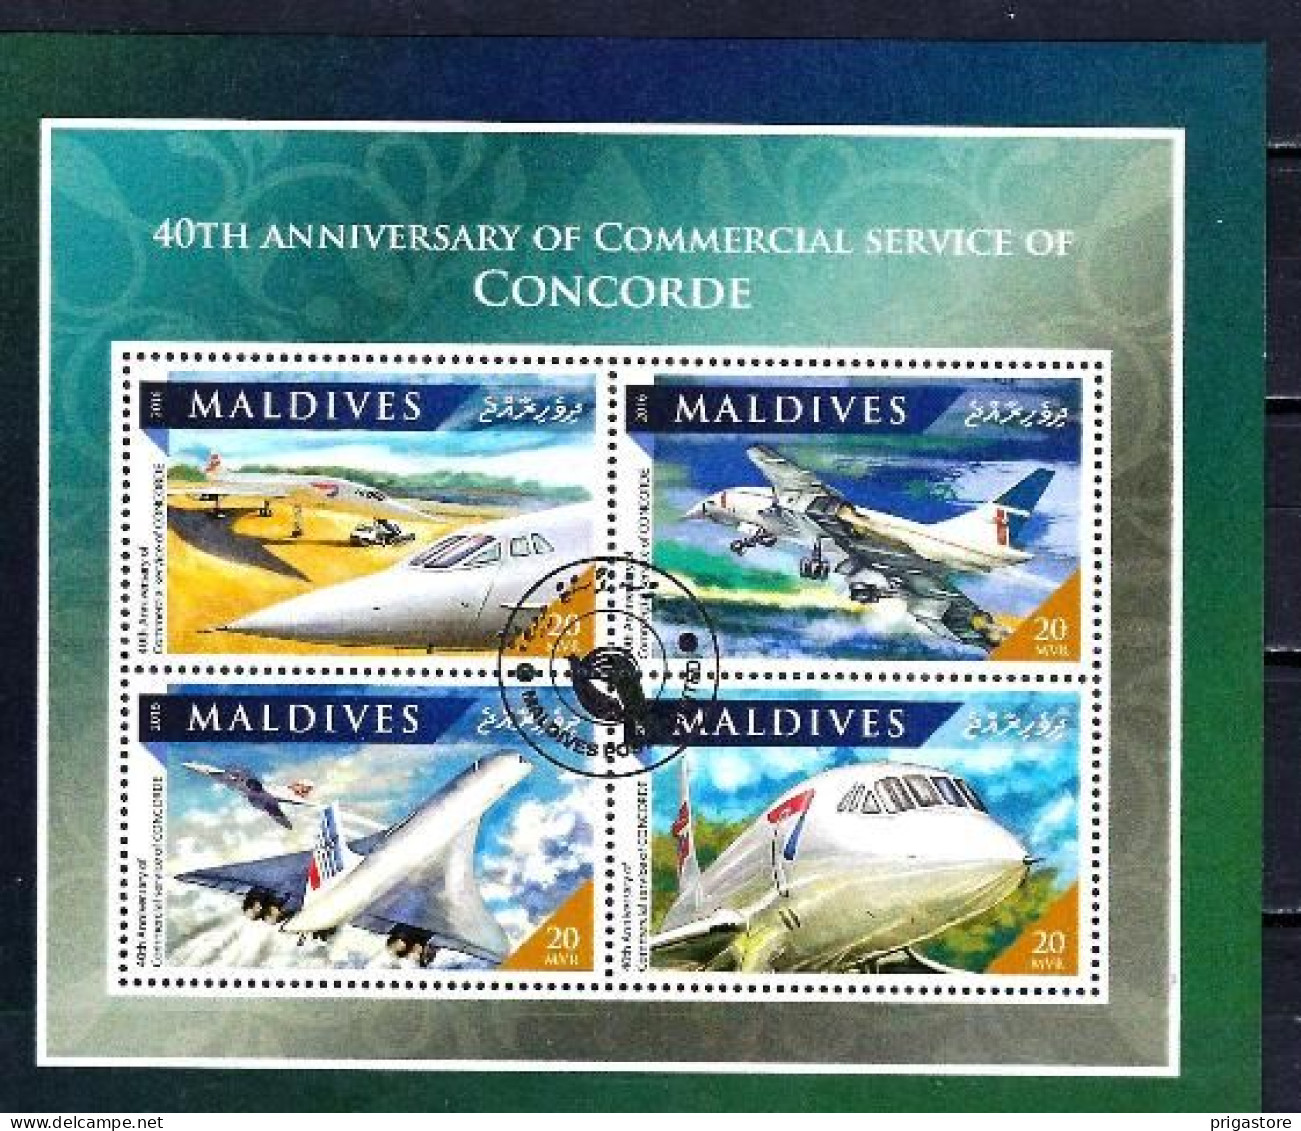 Maldives 2016 Avions Concorde (75) Yvert N° 5550 à 5553 Feuillet Oblitéré Used - Malediven (1965-...)